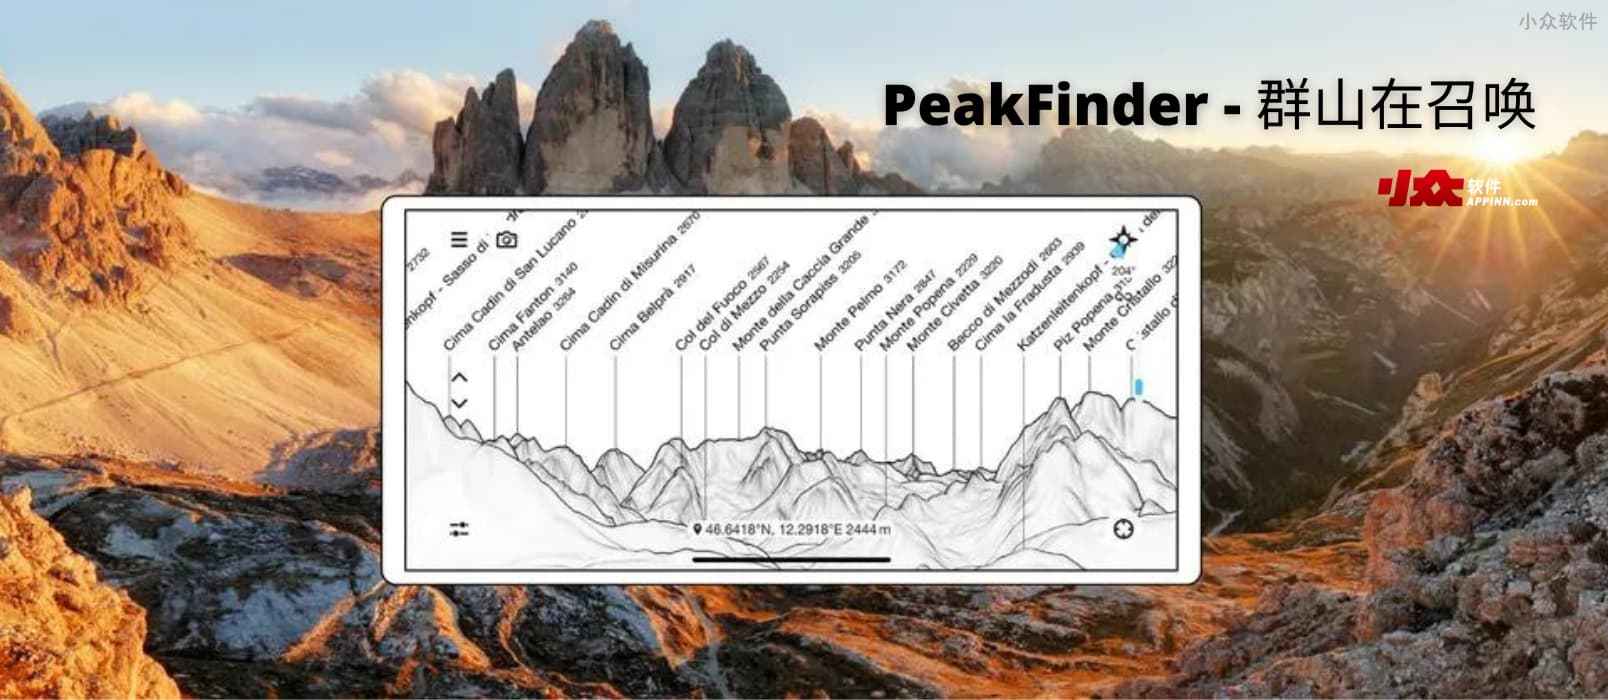 PeakFinder - 群山在召唤，超过 95 万座山峰，360°全景显示[iPhone/Android]